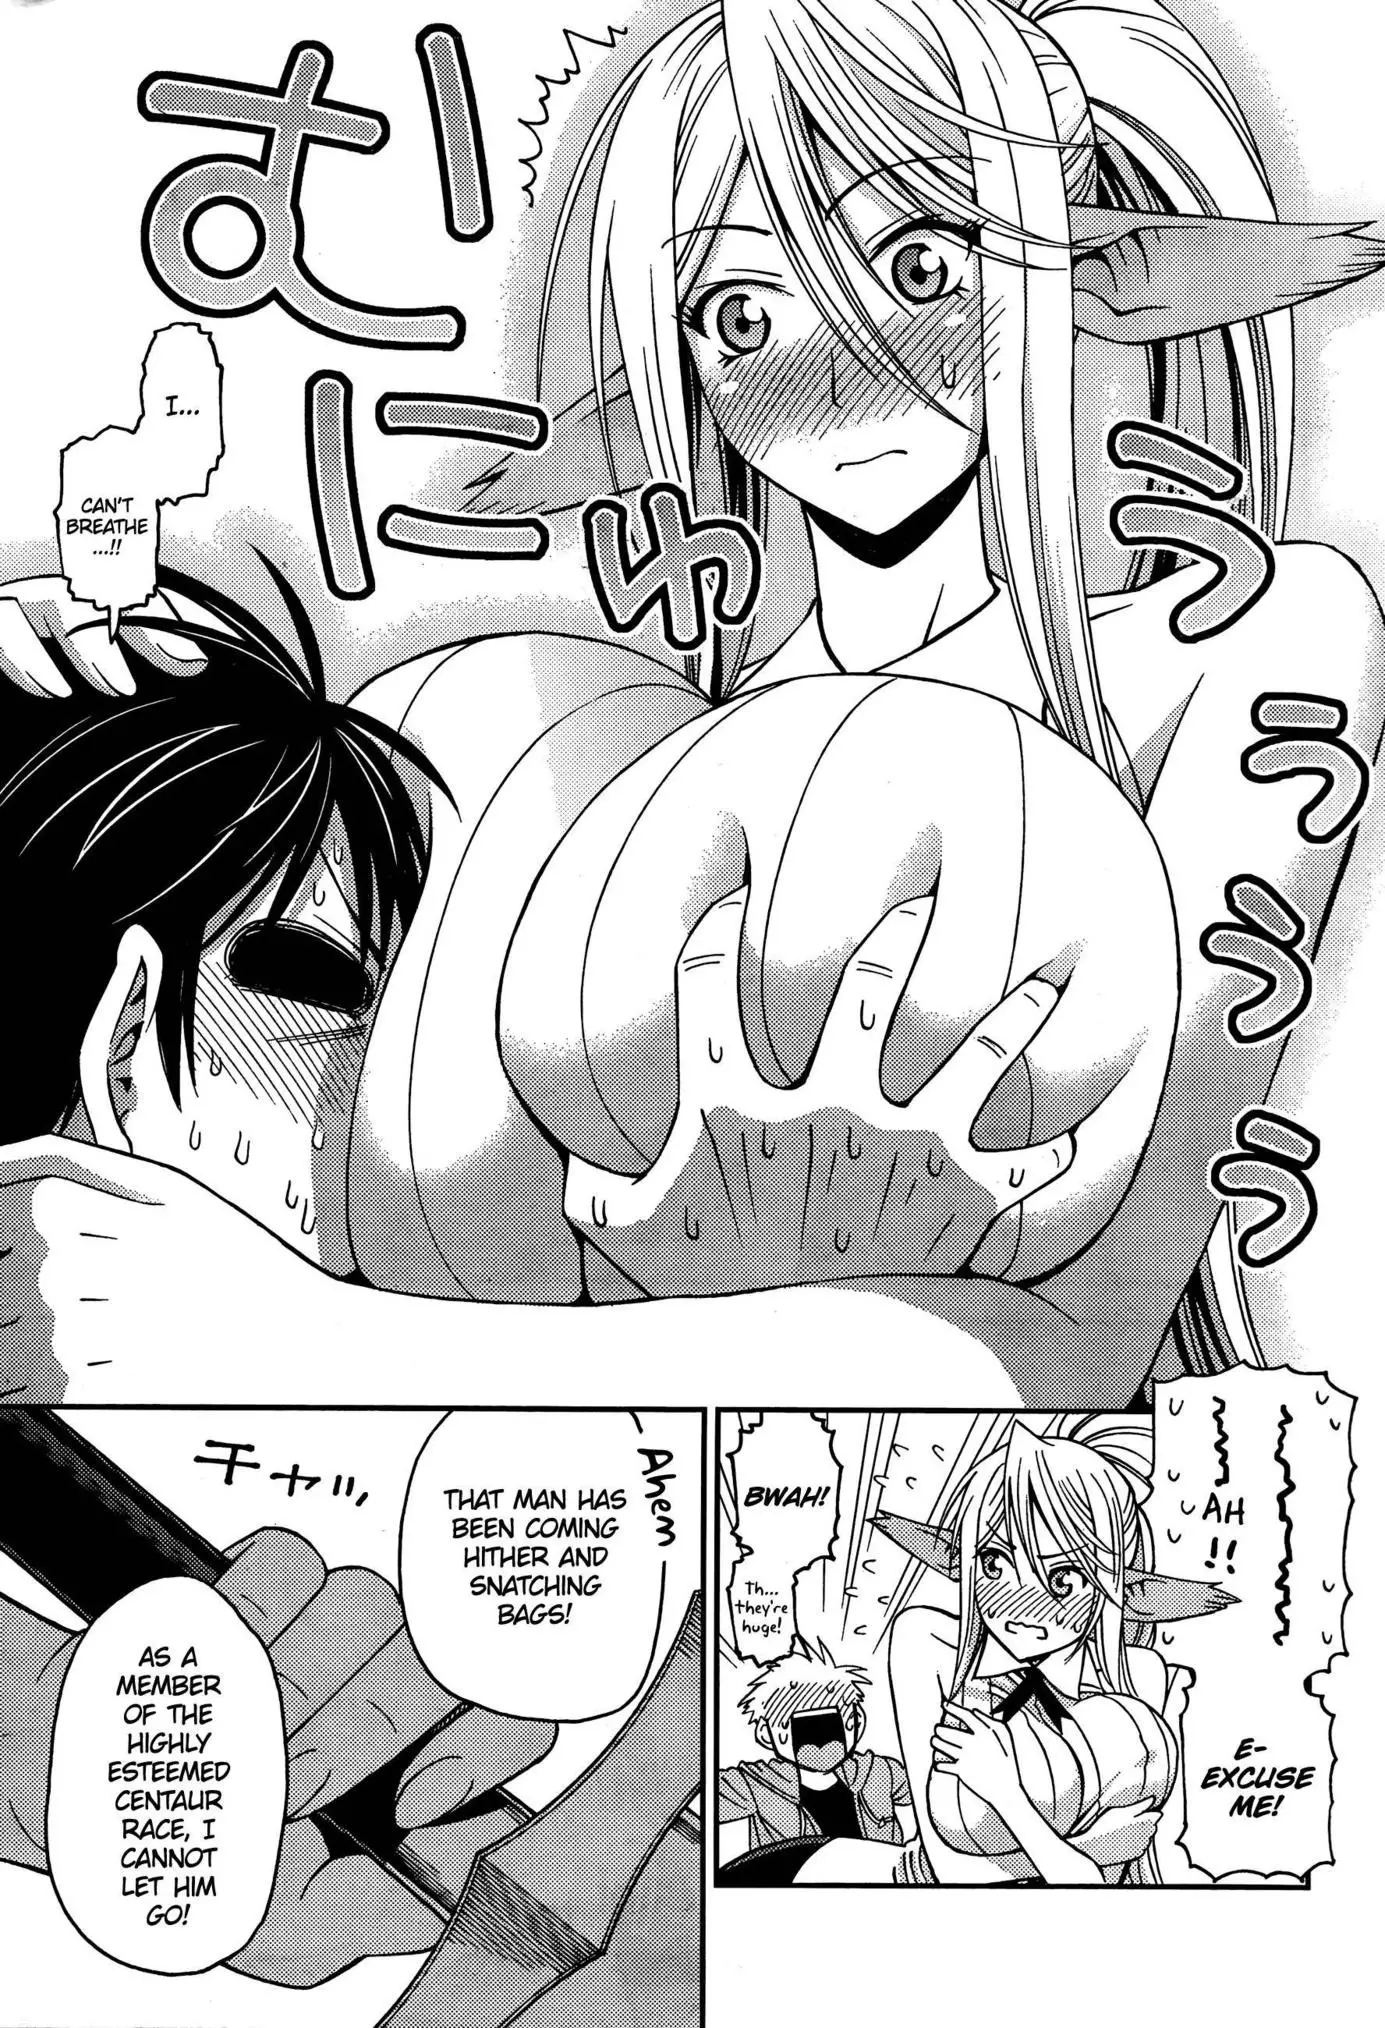 Monster Musume no Iru Nichijou - 4 page p_00007